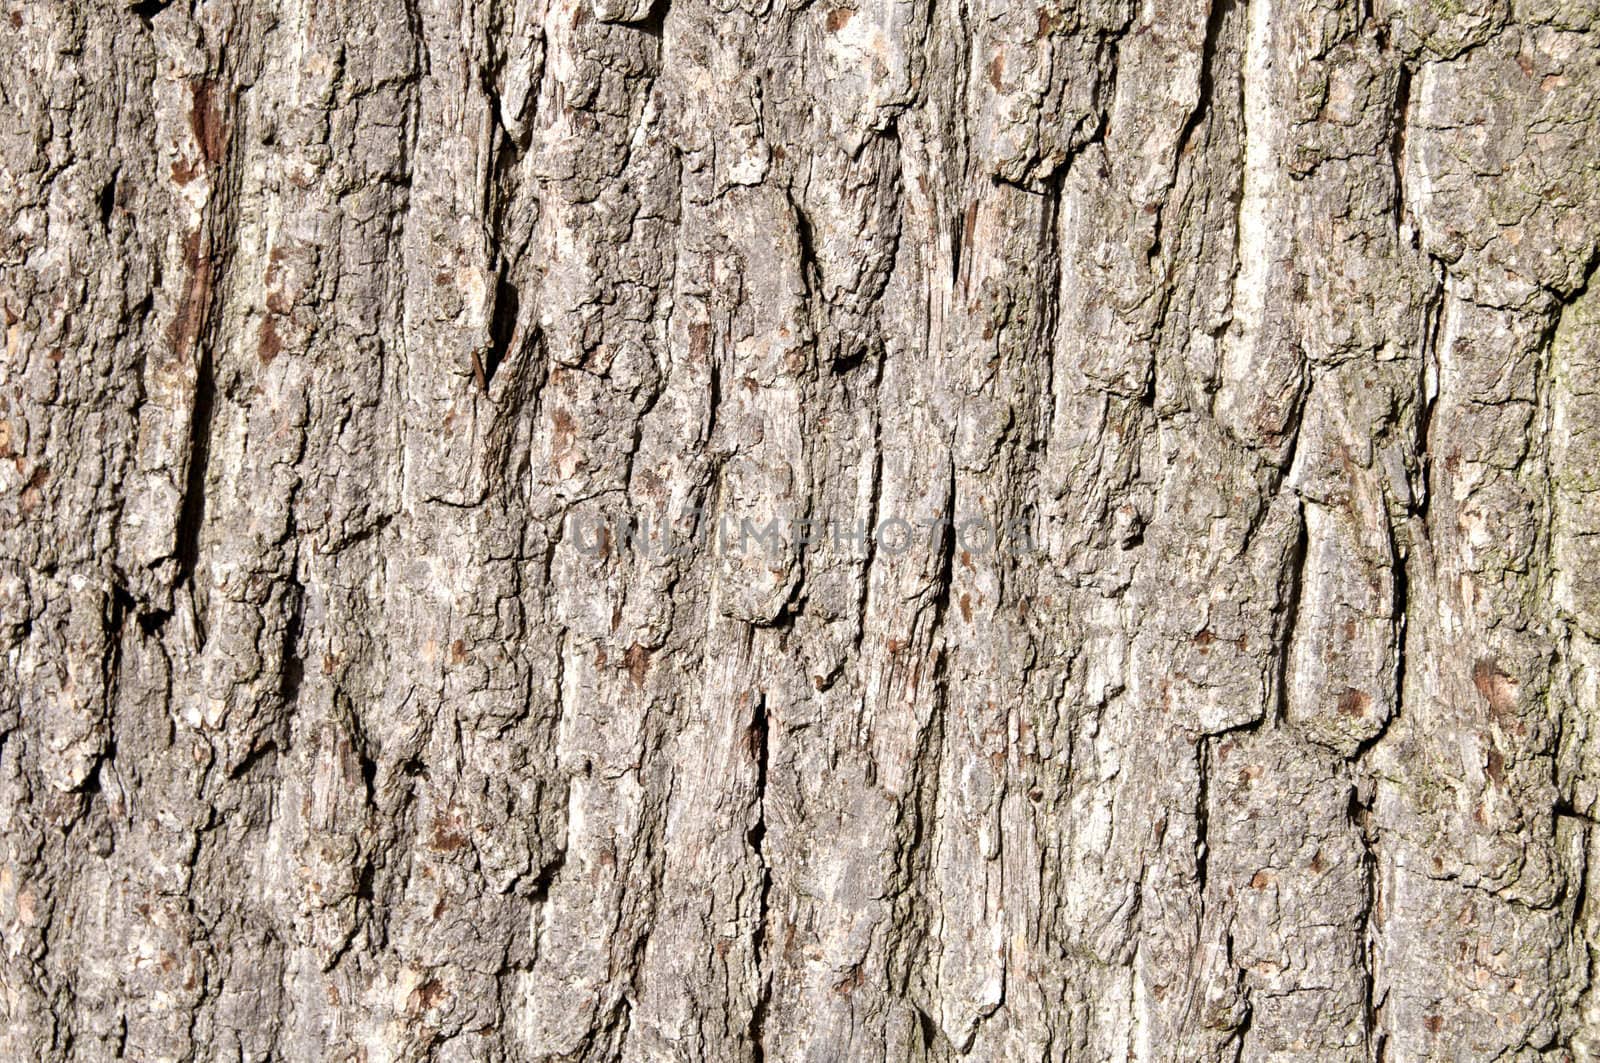 Detail of tree bark